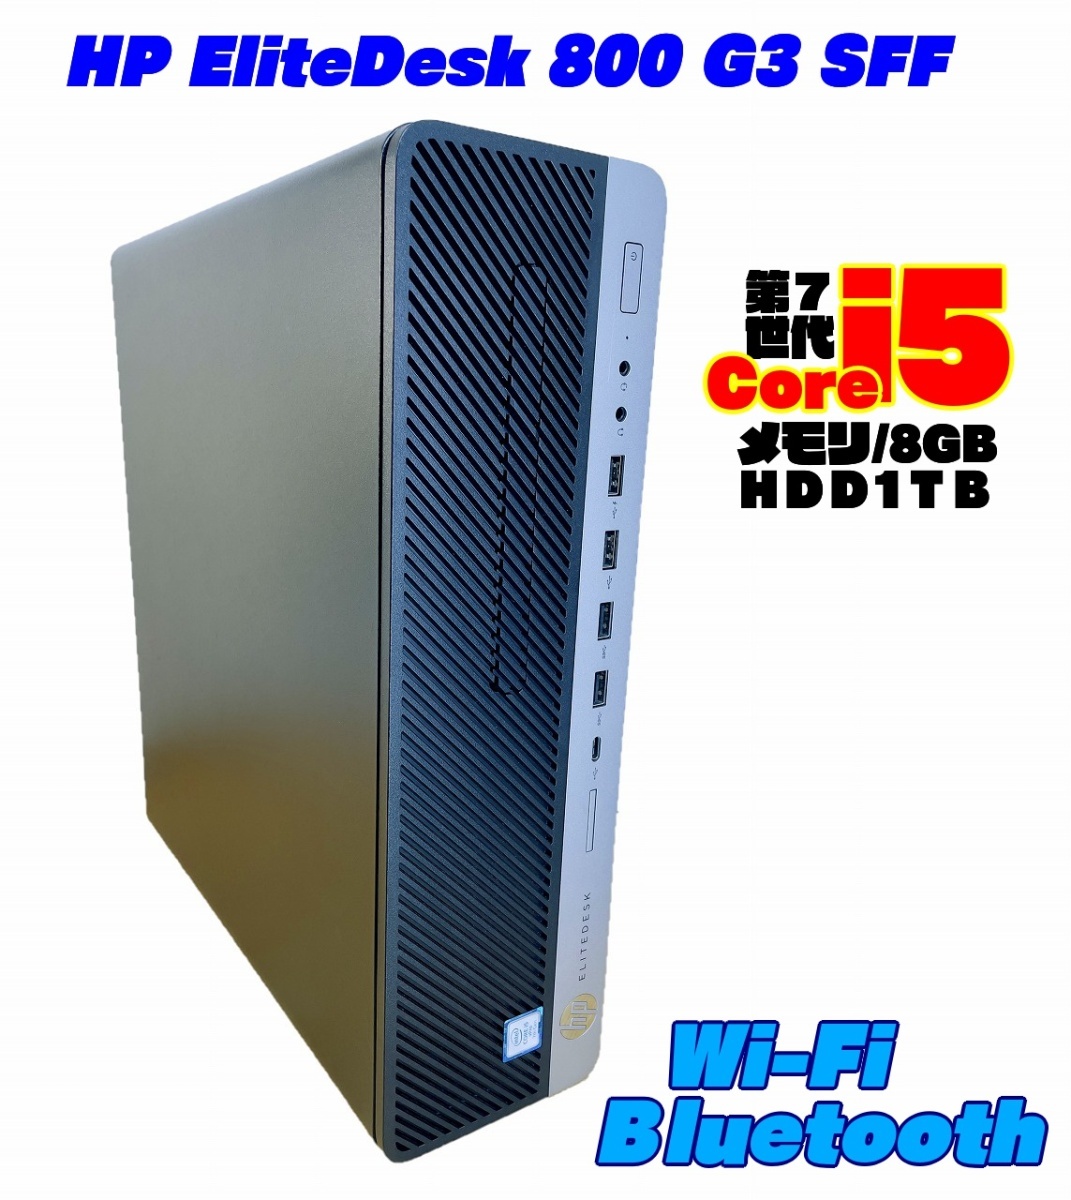 人気商品ランキング 800 EliteDesk 【Wi-Fi使えます】HP G3 Win11◆D160a GT730 GeFoce wi-fi/Bt 1TB 8GB i5-7500(最大3.8GHz/4コア) Core SFF パソコン単体